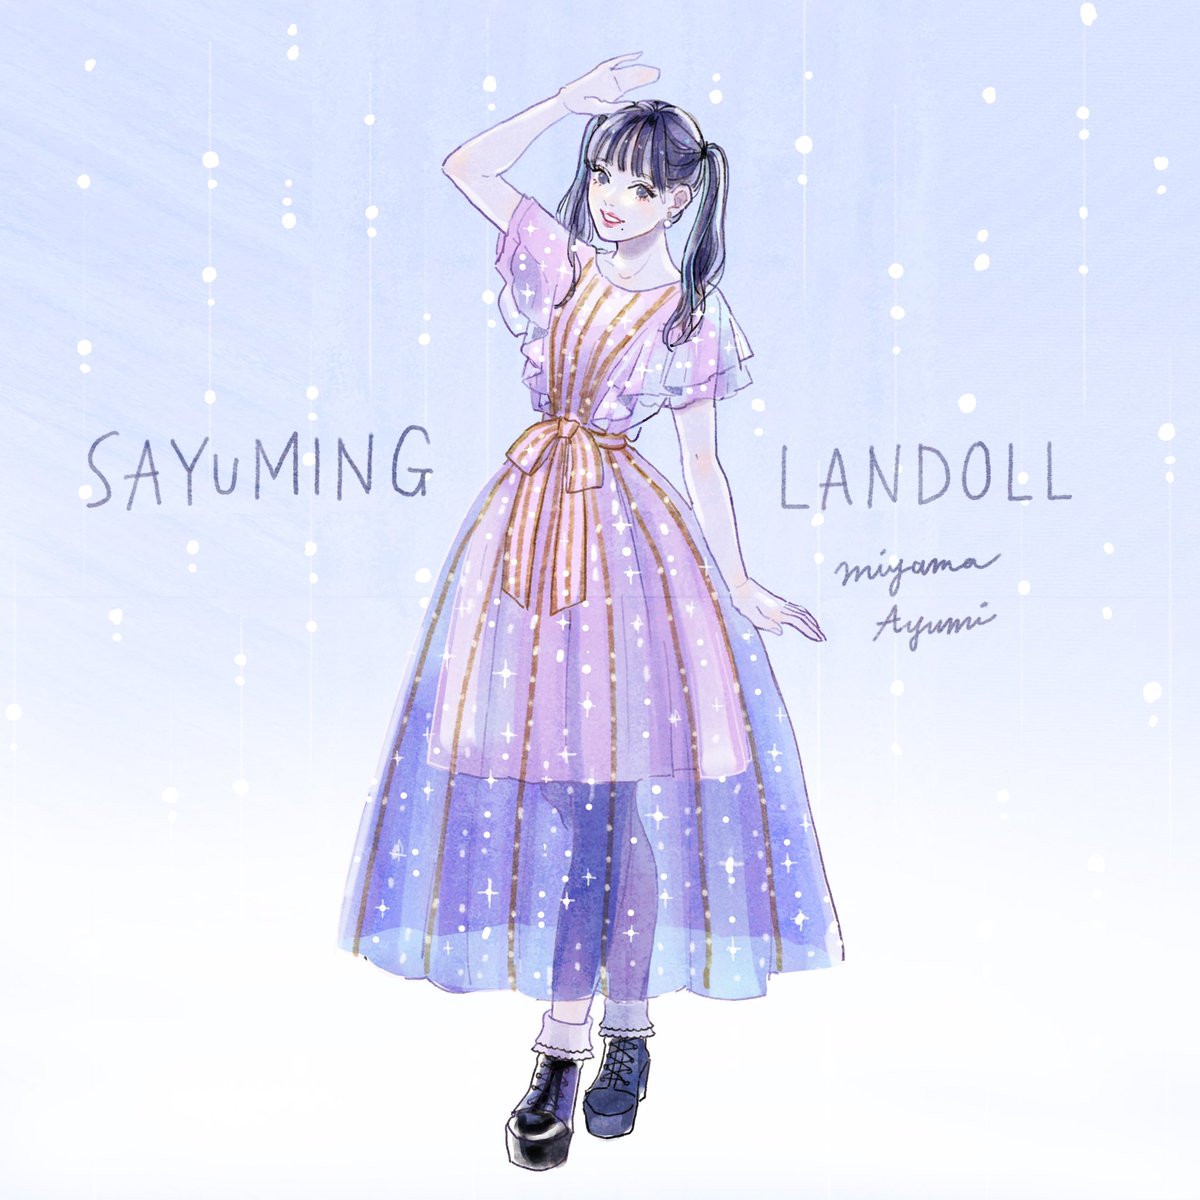 「道重さゆみさんの #SAYUMINGLANDOLL未来 ライティングで幻想的に輝」|miya(ミヤマアユミ)のイラスト